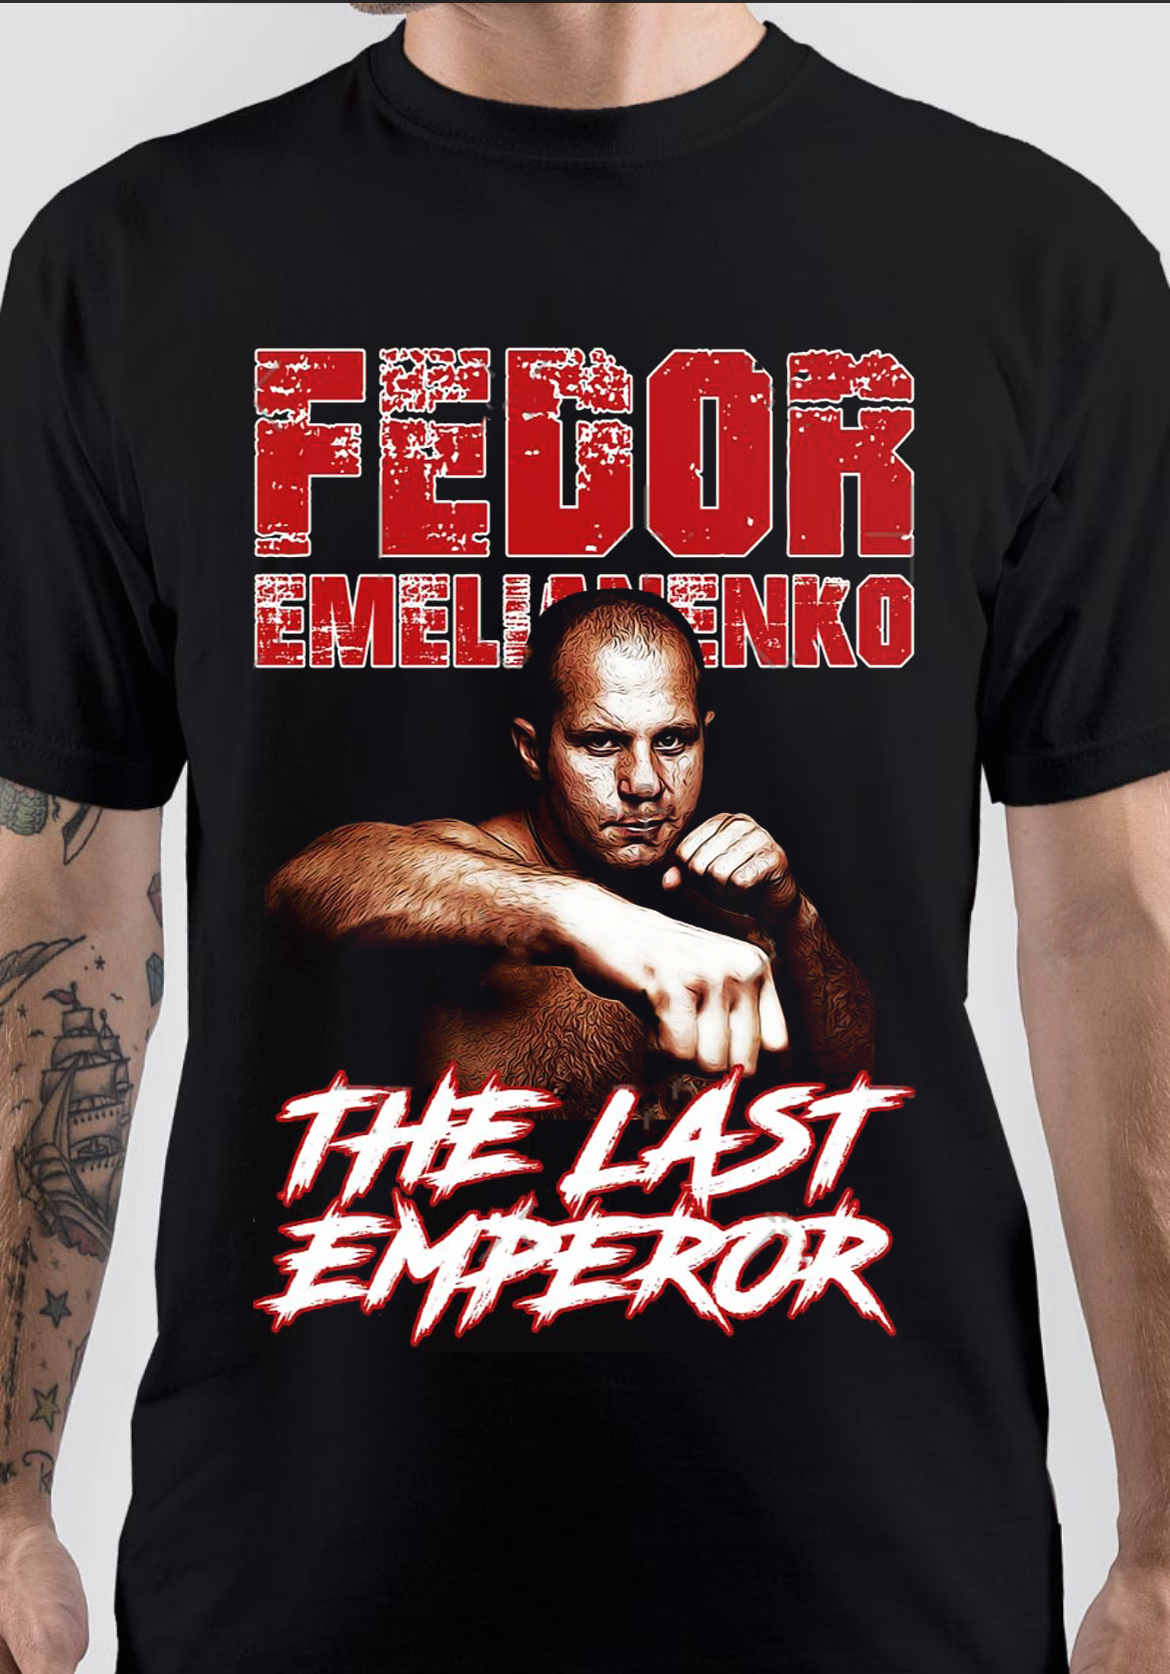 Fedor Emelianenko T-Shirt And Merchandise